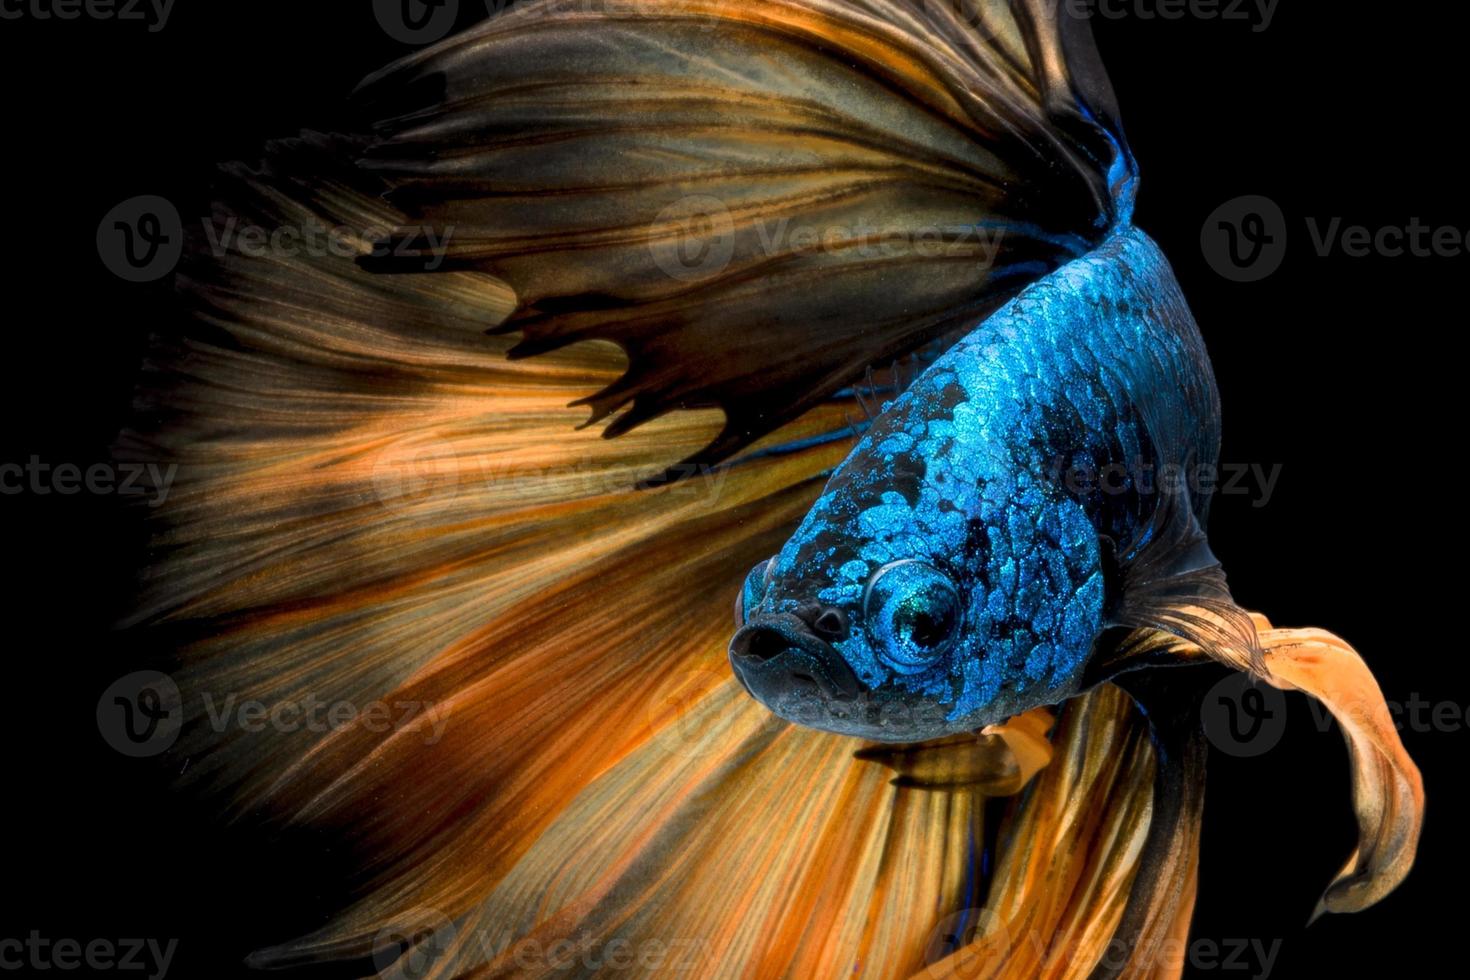 Nahaufnahme Kunstbewegung von Betta-Fischen oder siamesischen Kampffischen auf schwarzem Hintergrund foto